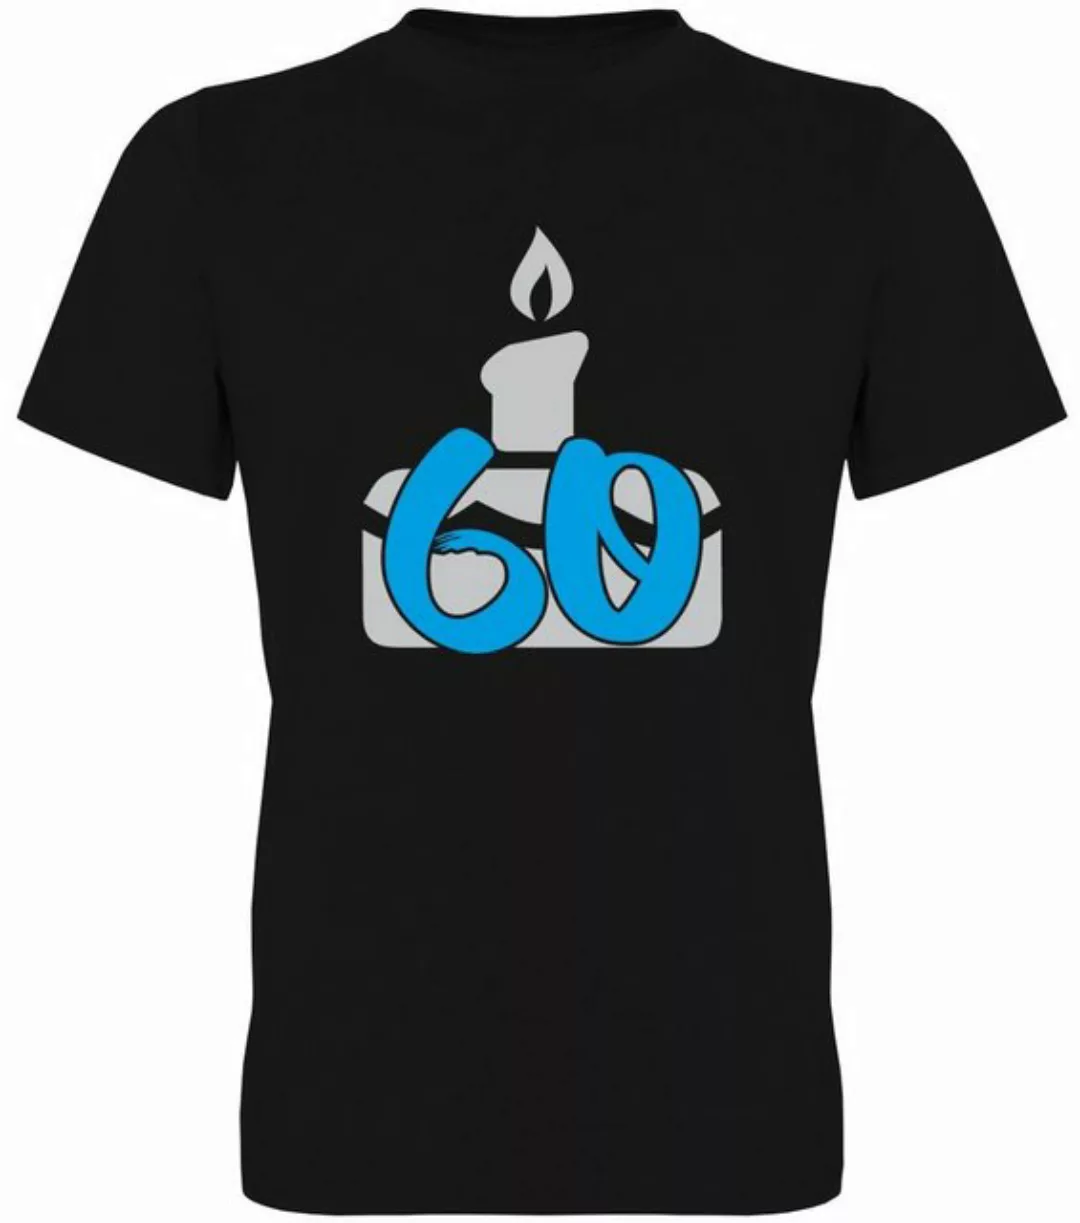 G-graphics T-Shirt 60 – Geburtstagstorte Herren T-Shirt, zum 60ten Geburtst günstig online kaufen